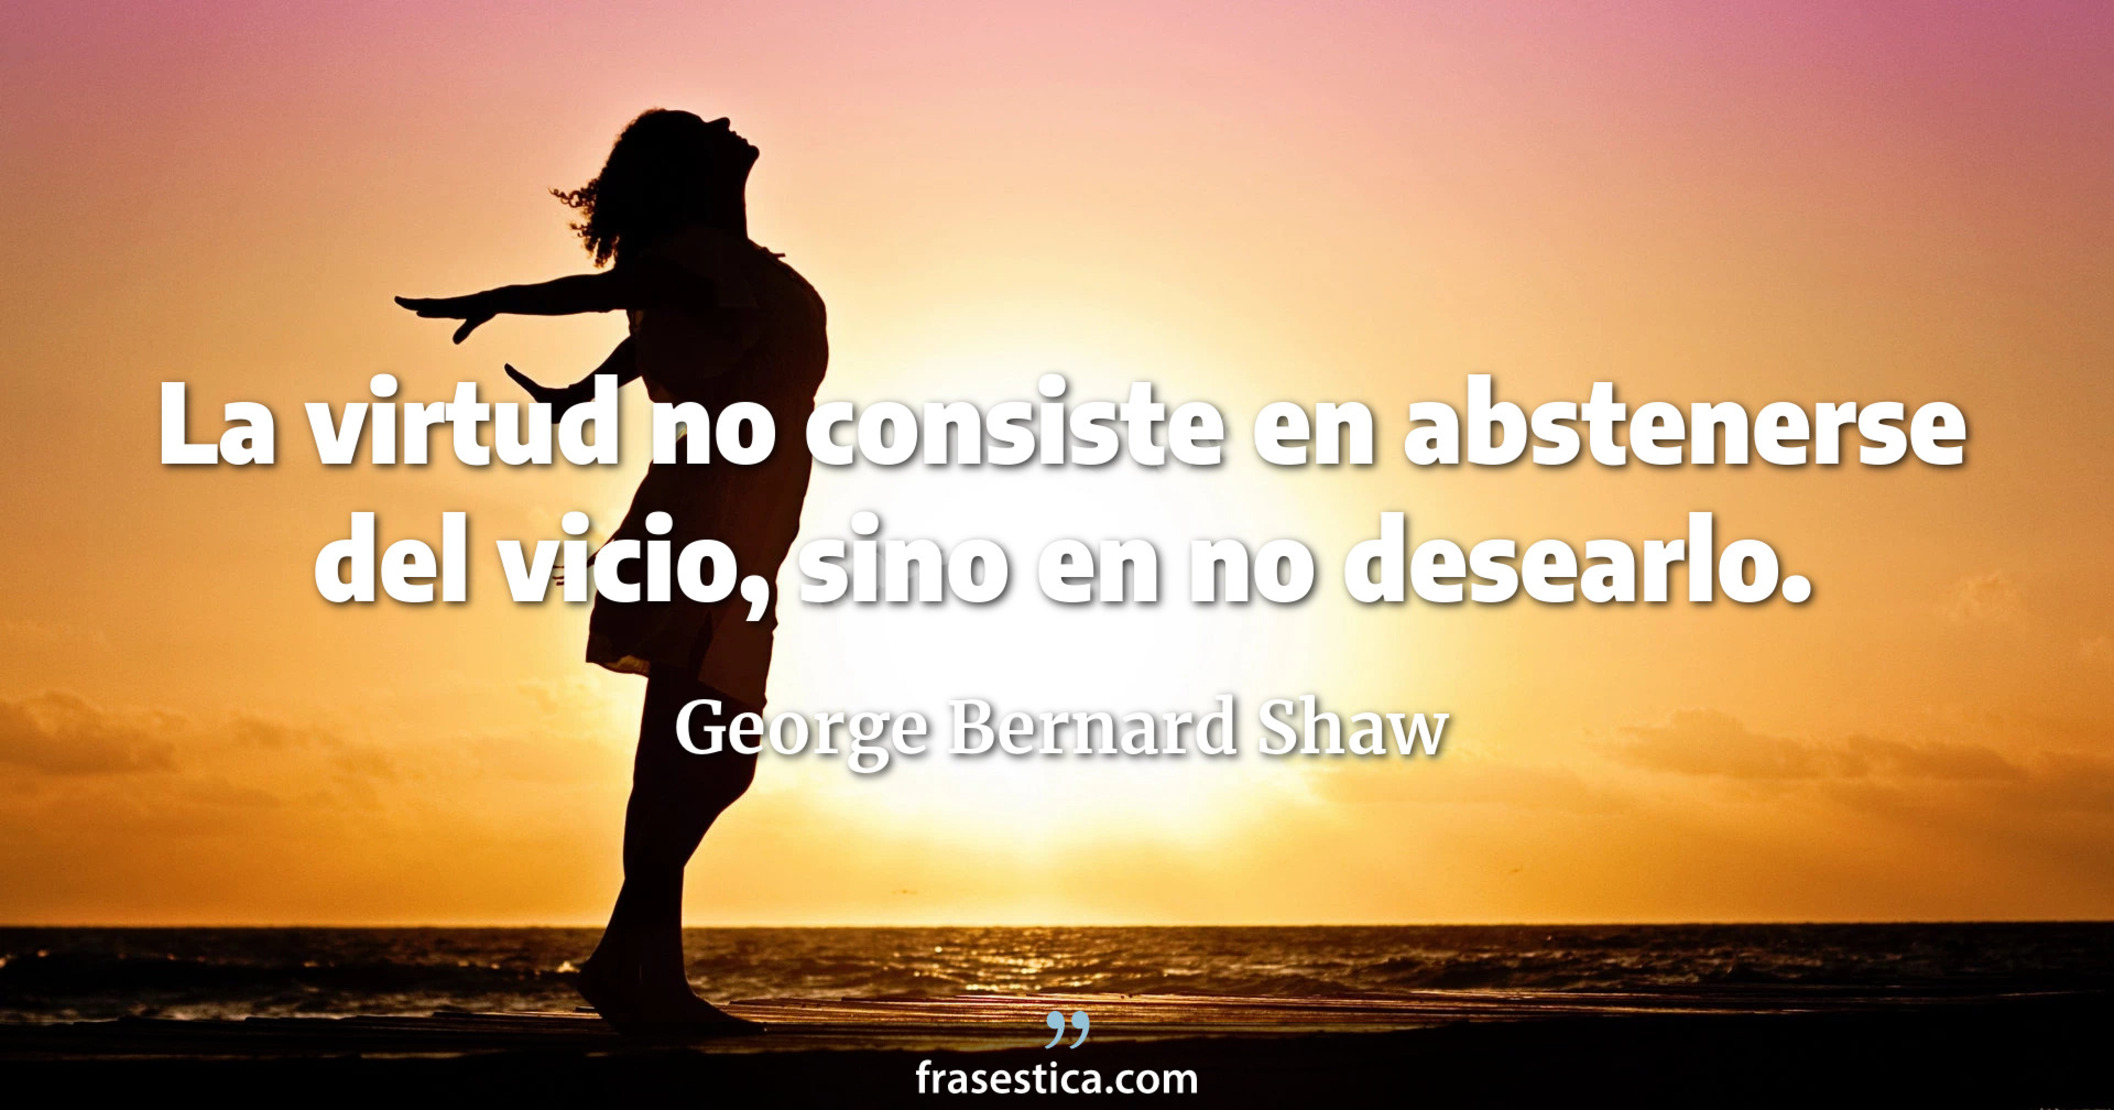 La virtud no consiste en abstenerse del vicio, sino en no desearlo. - George Bernard Shaw